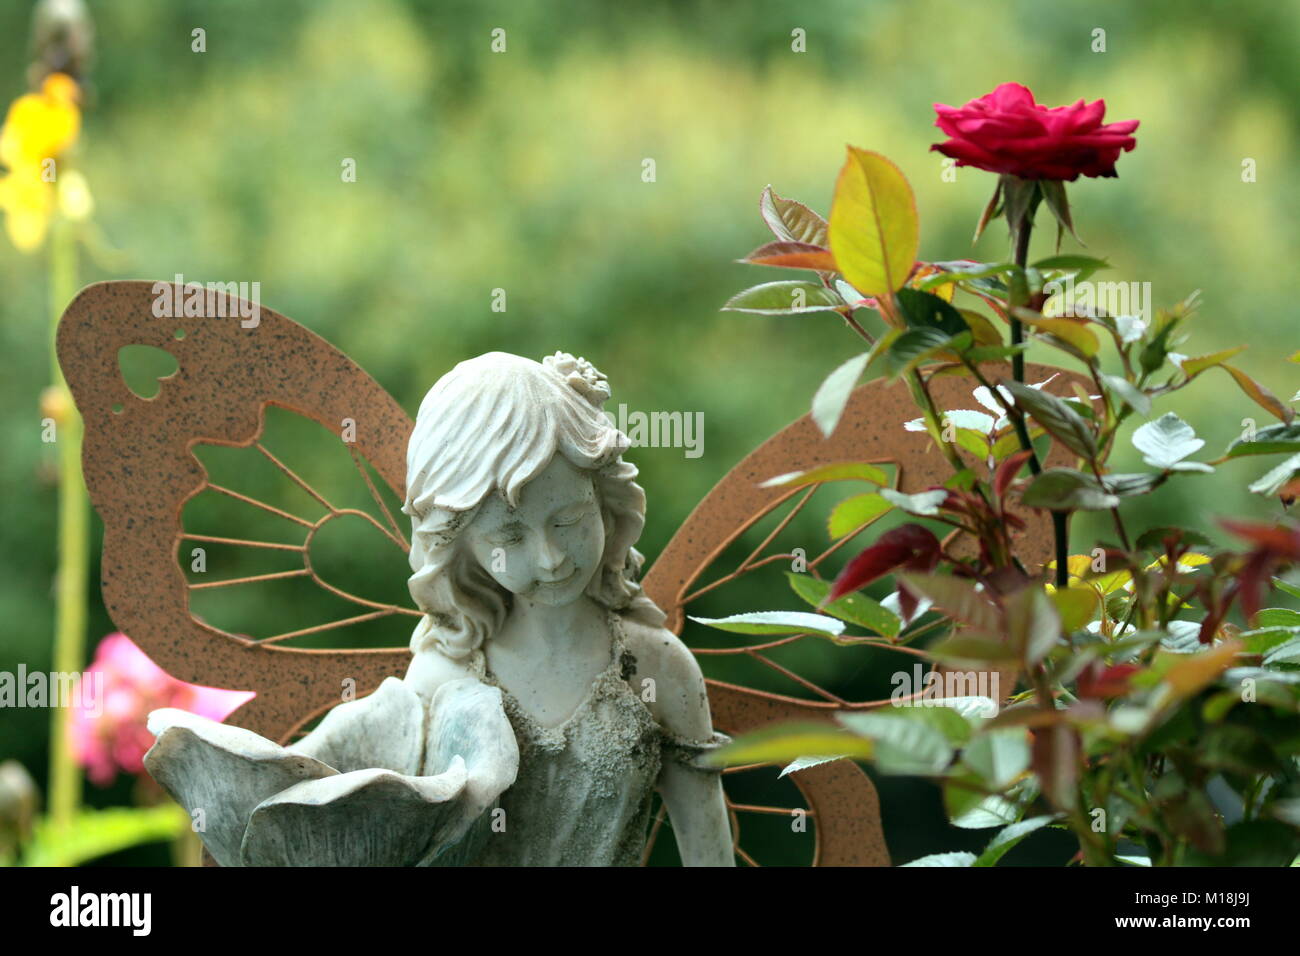 A stone fairy guards the garden. Stock Photo